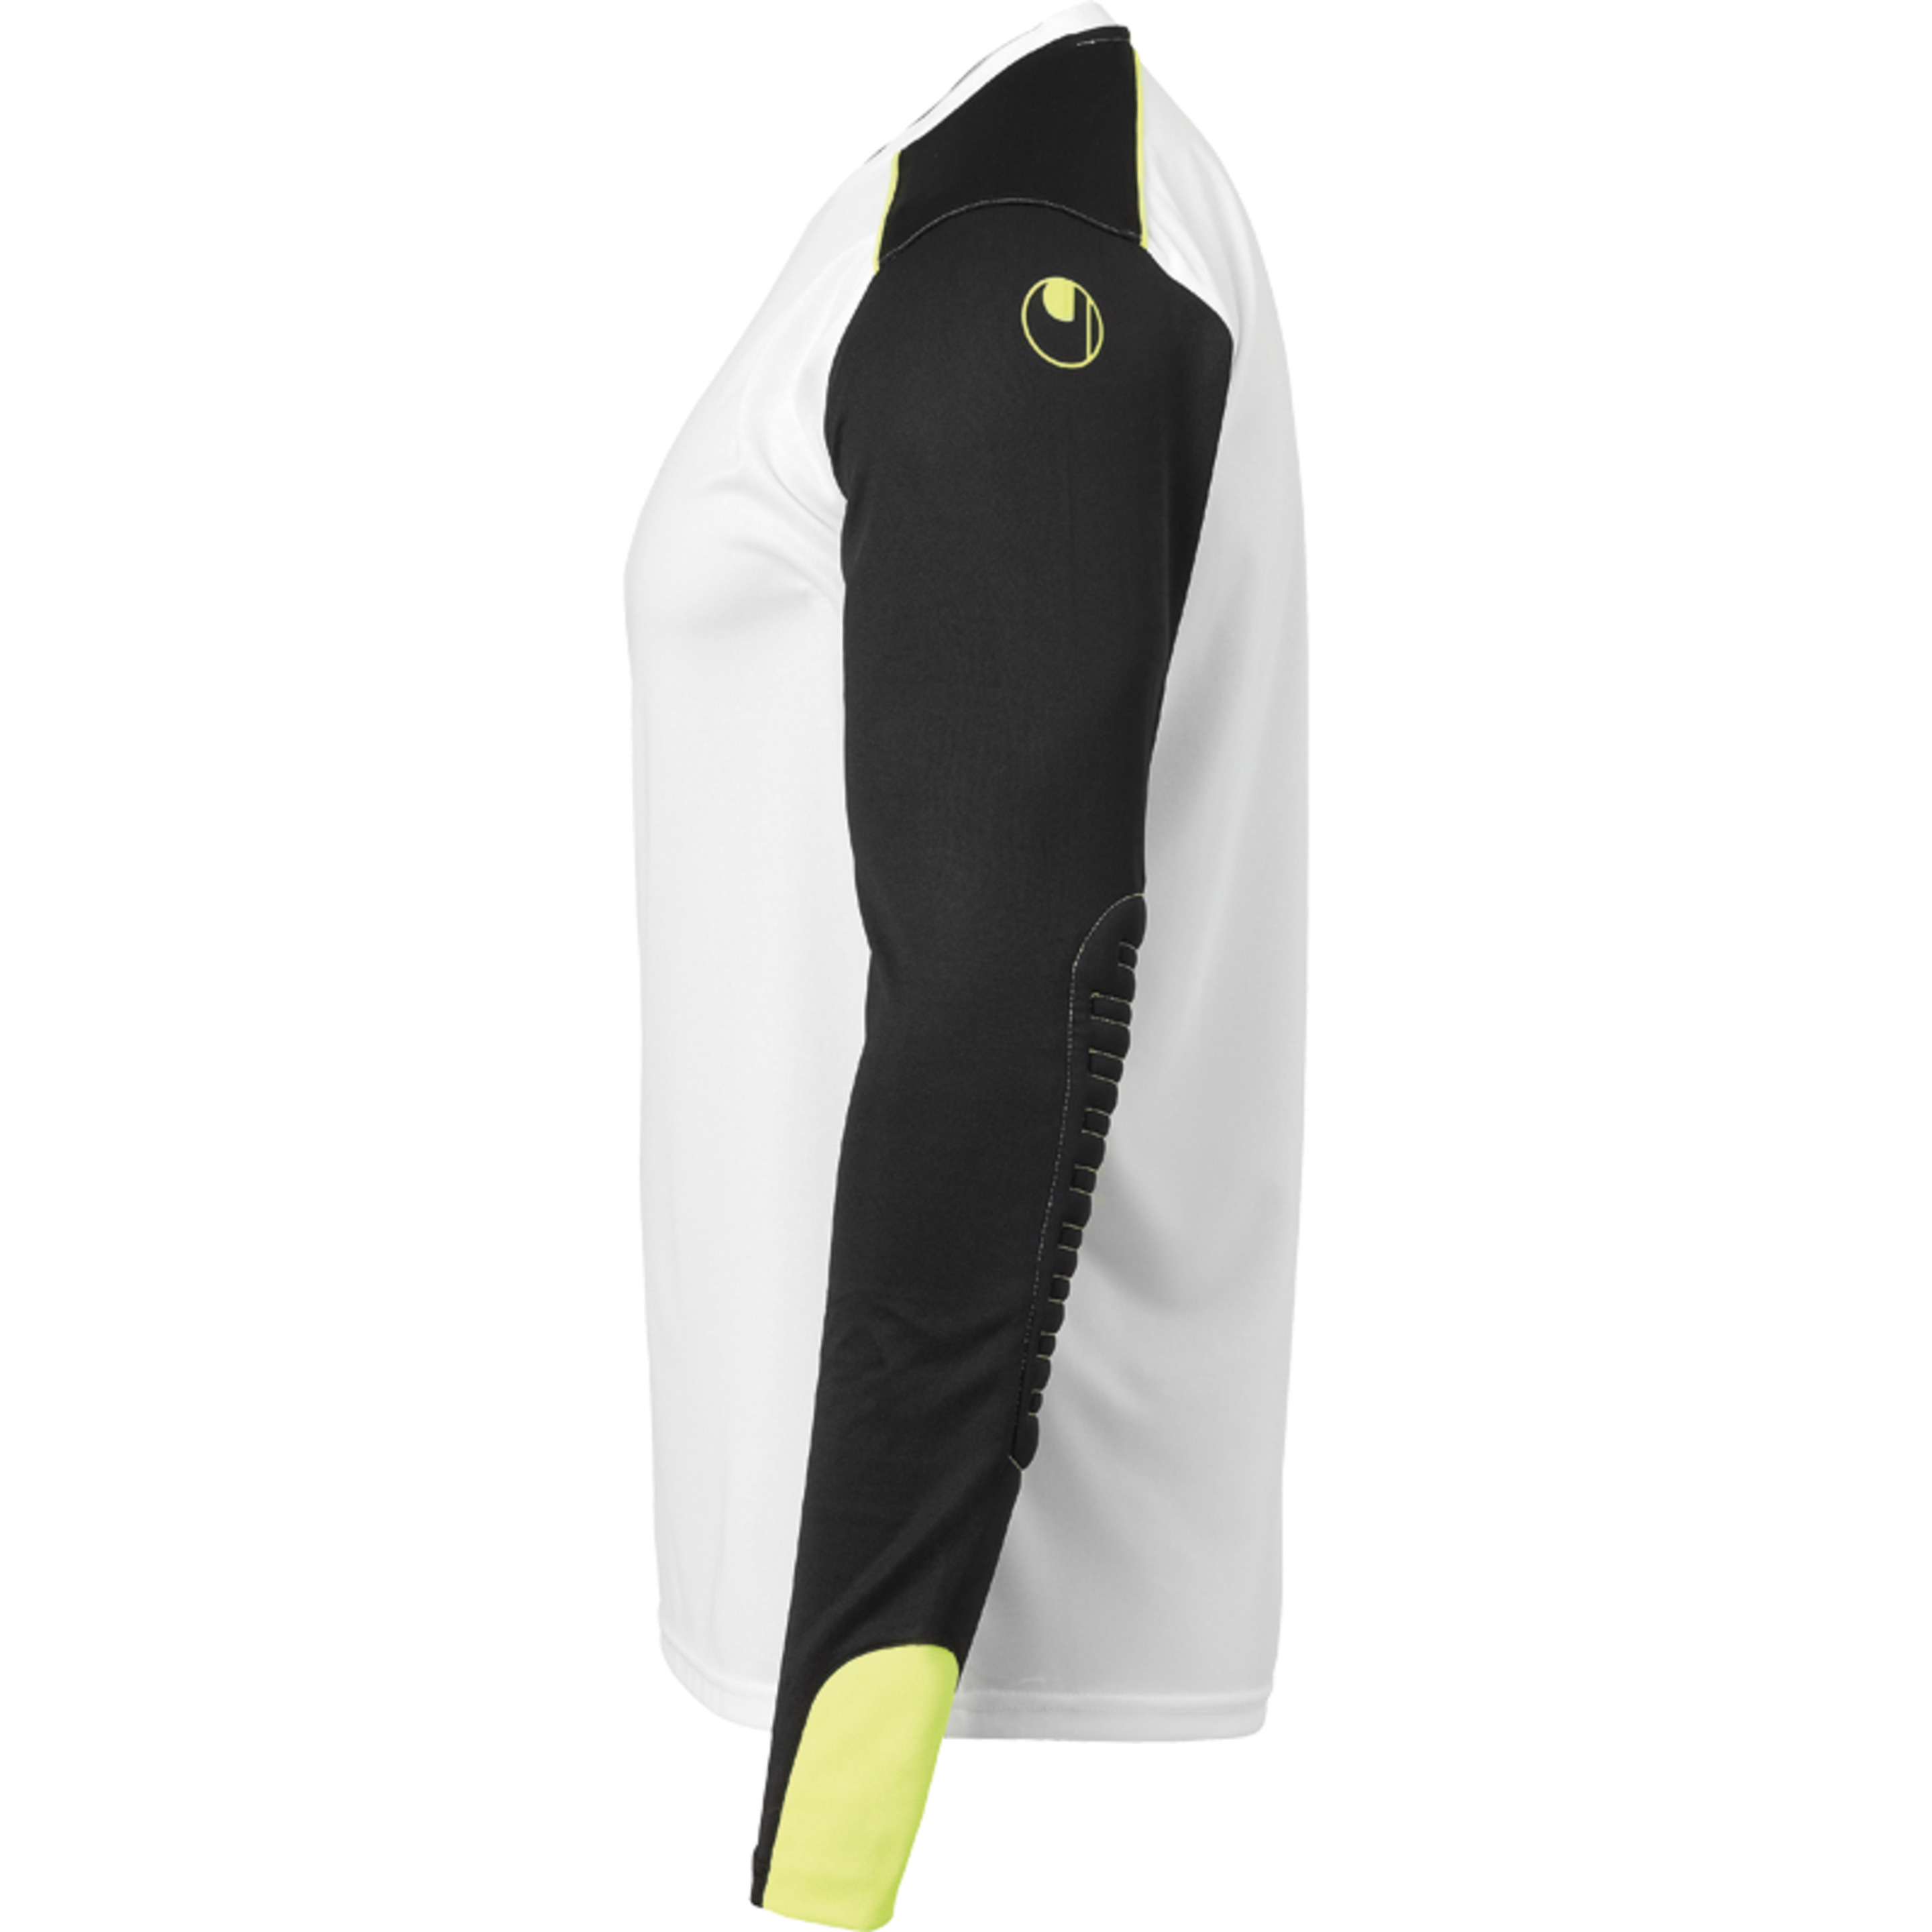 Tower Goalkeeper Shirt Longsleeved Blanco/negro/amarillo Flu Uhlsport